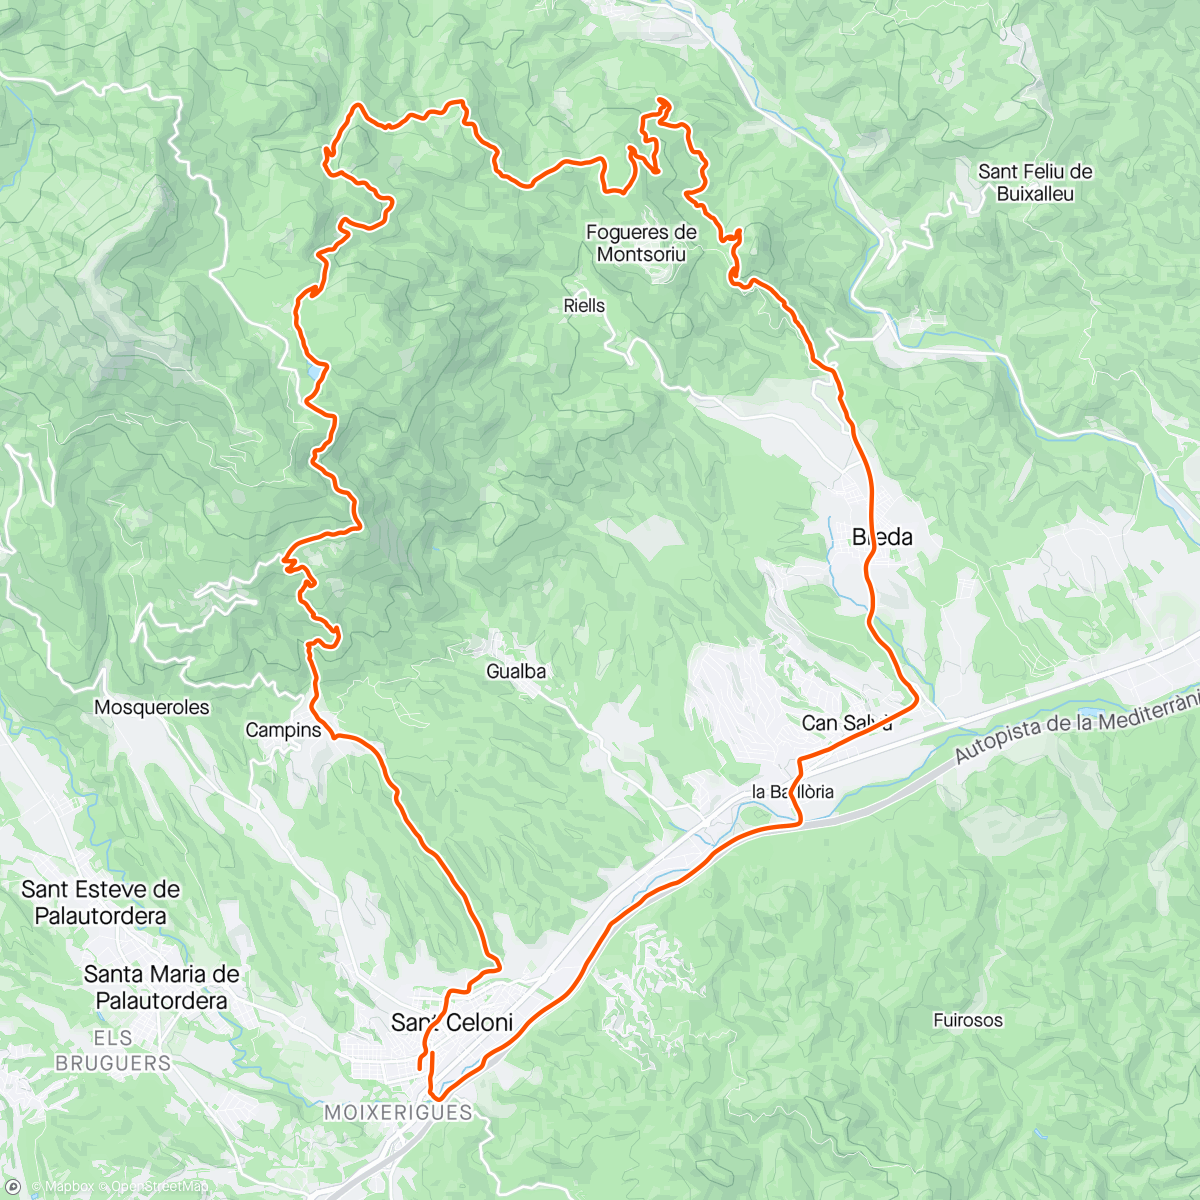 Map of the activity, Castanyer del Roter-Pantà de Santa Fé